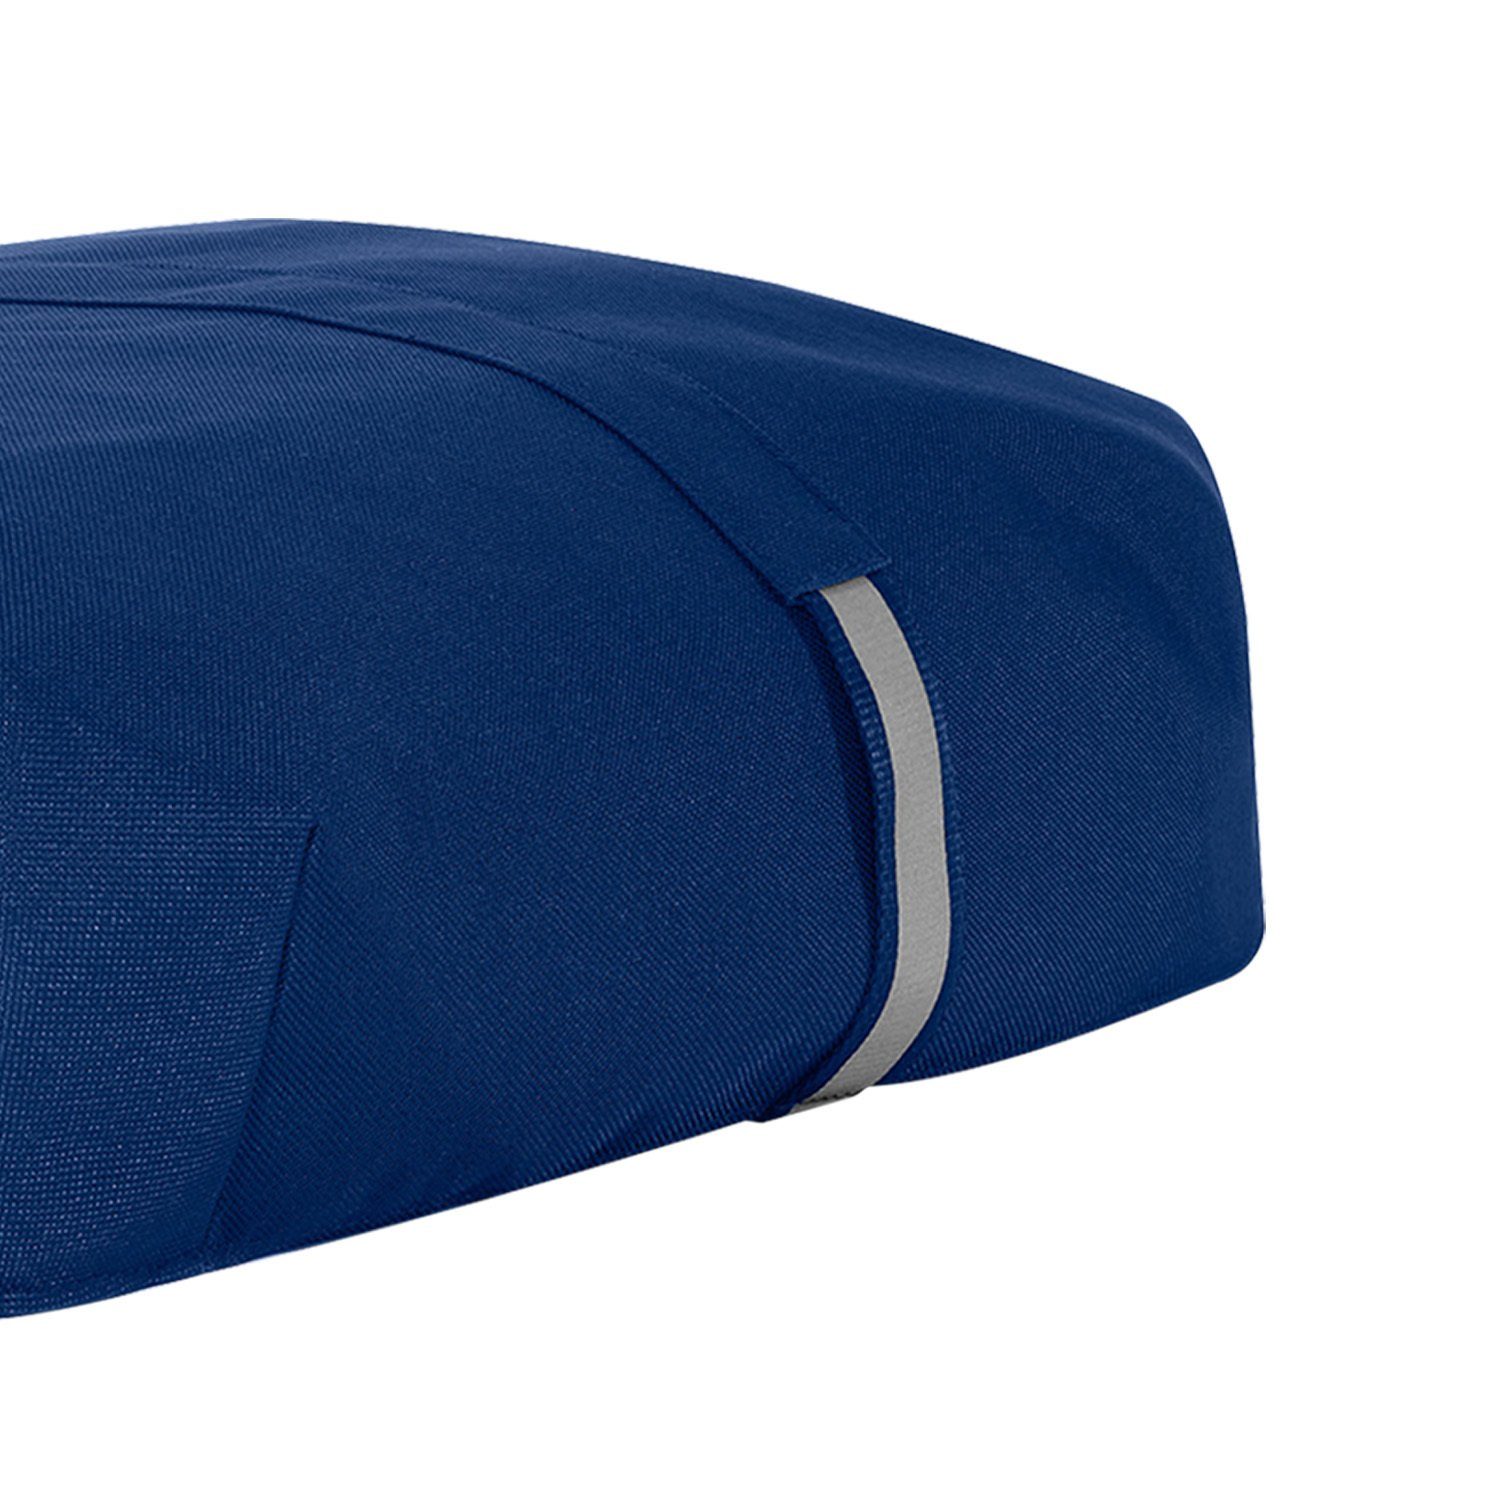 Auswahl navy Einkaufstrolley Abdeckung REISENTHEL® Wetterschutz Schutzhülle carrybag - Cover